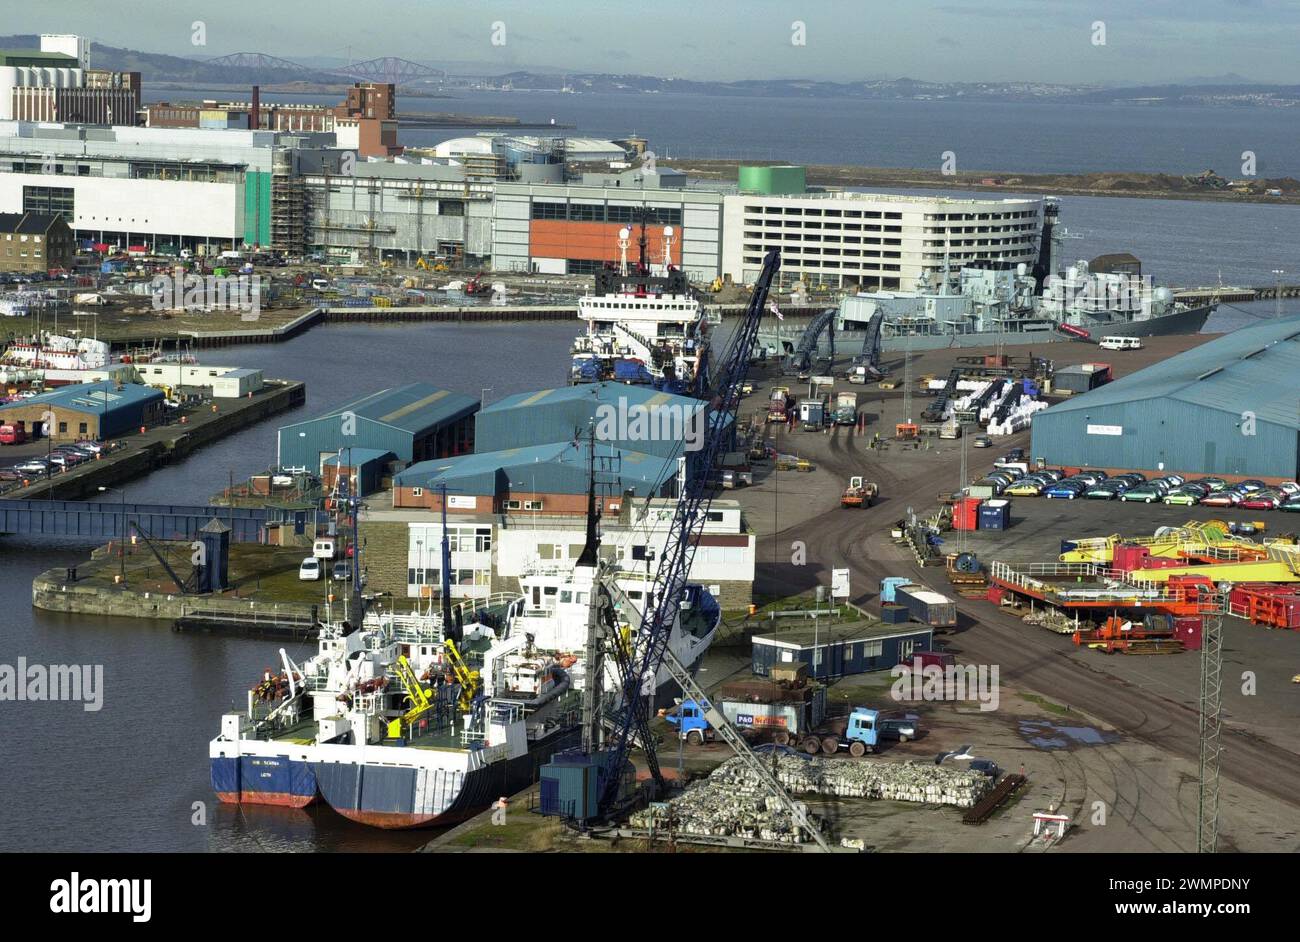 Le port le plus achalandé d'Écosse, le port de Leith, à Édimbourg. Le nouveau terminal de ligne qui est actuellement en construction prend forme TOP tandis que le HMS Edinburgh est amarré à droite et les ponts Forth Road et Rail sont visibles au loin. Banque D'Images